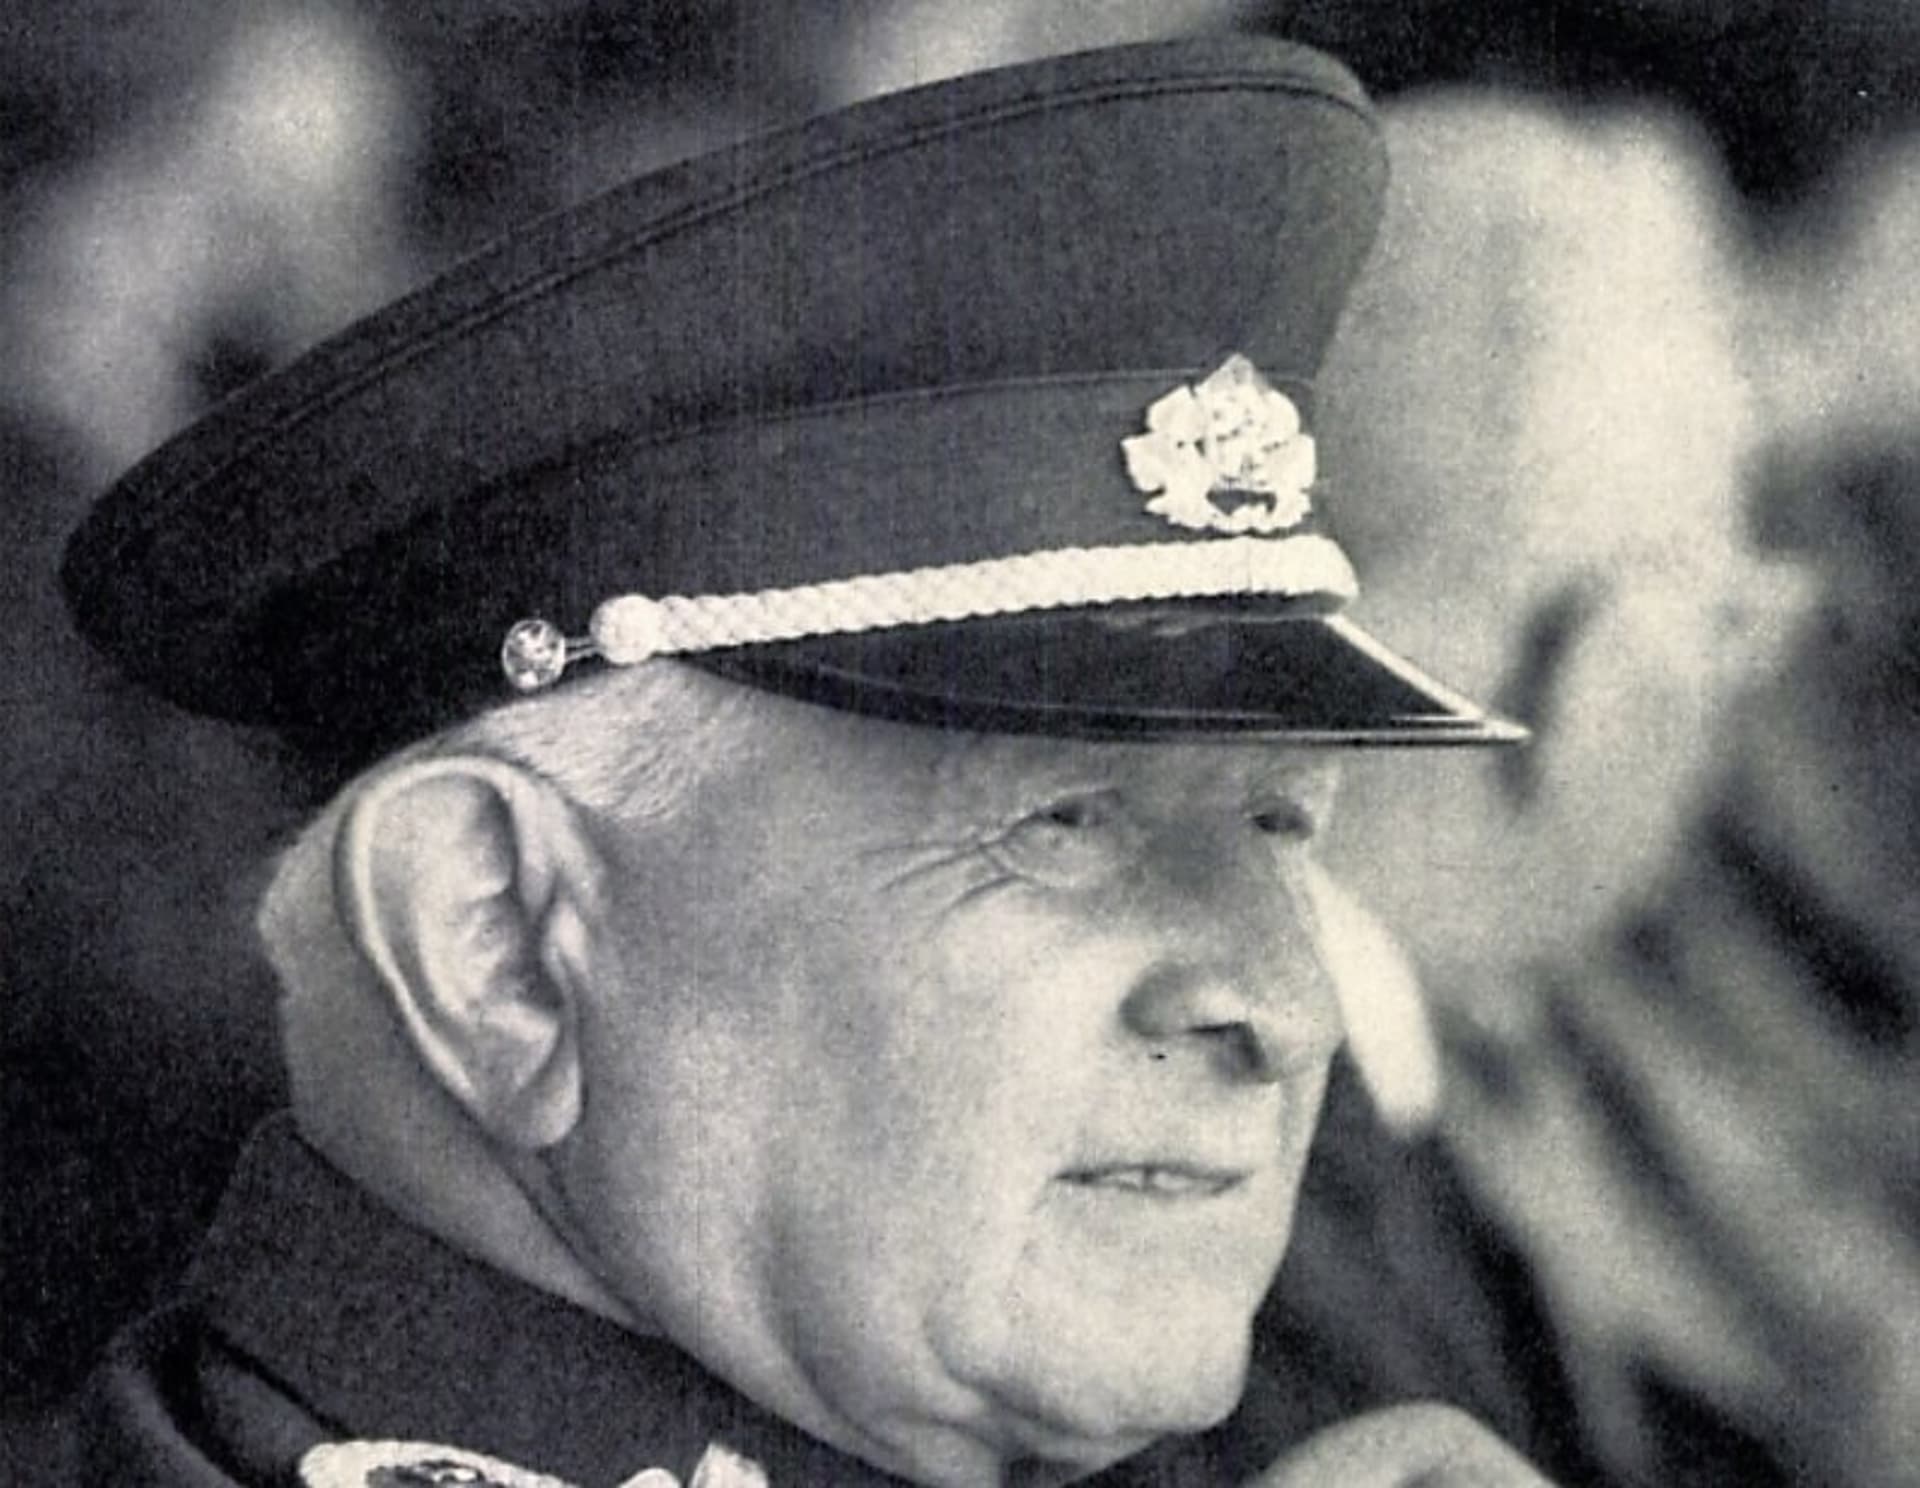 Generál Ludvík Svboda. Z knihy Náš velitel z roku 1971 uložené v Národní knihovně v Praze. 